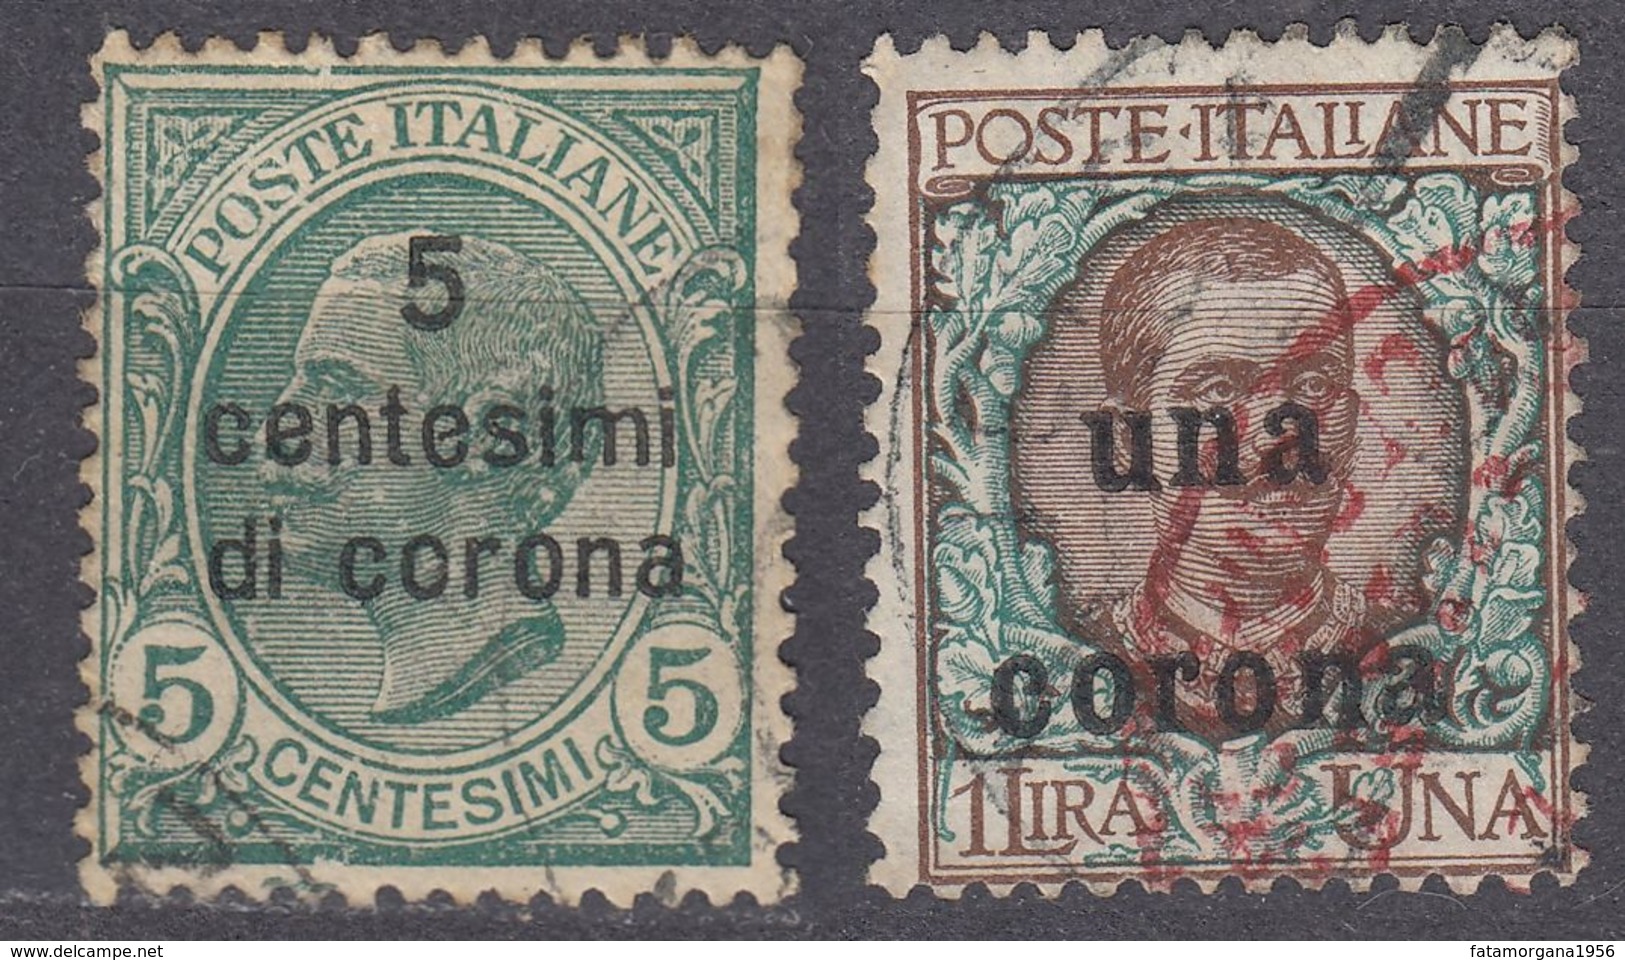 DALMAZIA, OCCUPAZIONE ITALIANA - 1921/1922 - Lotto 2 Valori USATI: Unificato 2 E 6. - Dalmatia